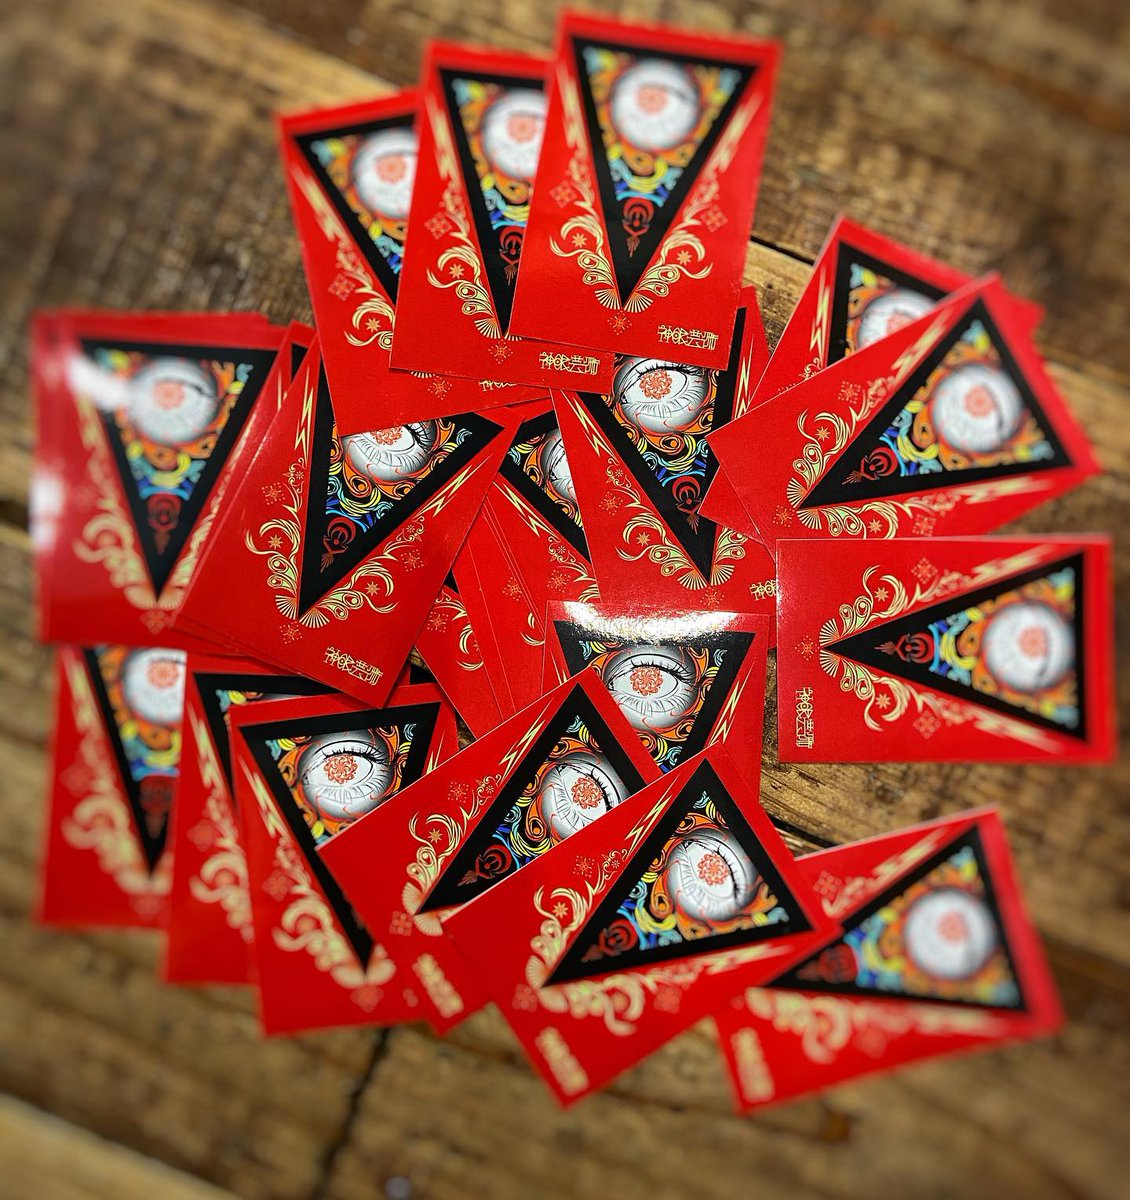 神眼芸術 New Art Stickers
　
#神眼芸術 #shingangeijyutsu #eyeofgod #artstickers #psychedelicart #psychedelicstickers #幾何学模様 #幾何学模様アート #artsticker #サイケデリック #アートステッカー #psychedelic #streetbrand #tokyobrand #tokyounderground #ステッカー #sticker #stickers